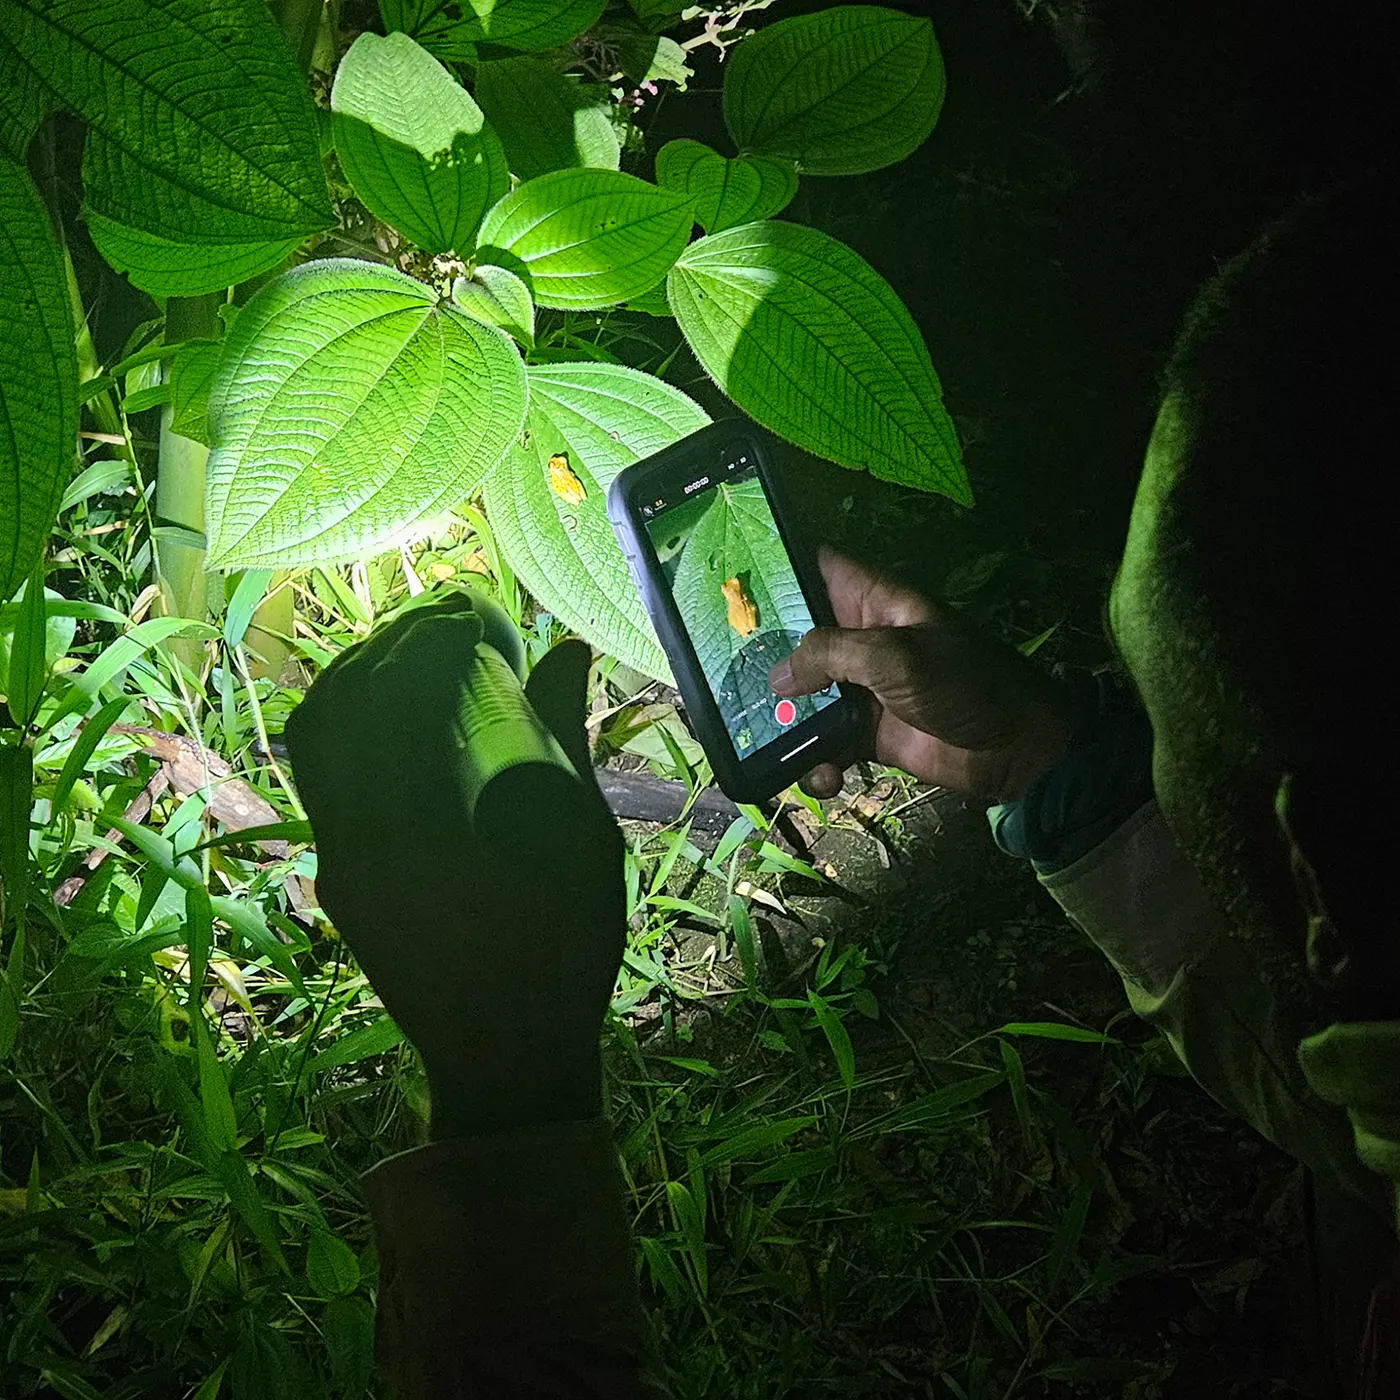 Mann beleuchtet Frosch auf einem Blatt mit Taschenlampe